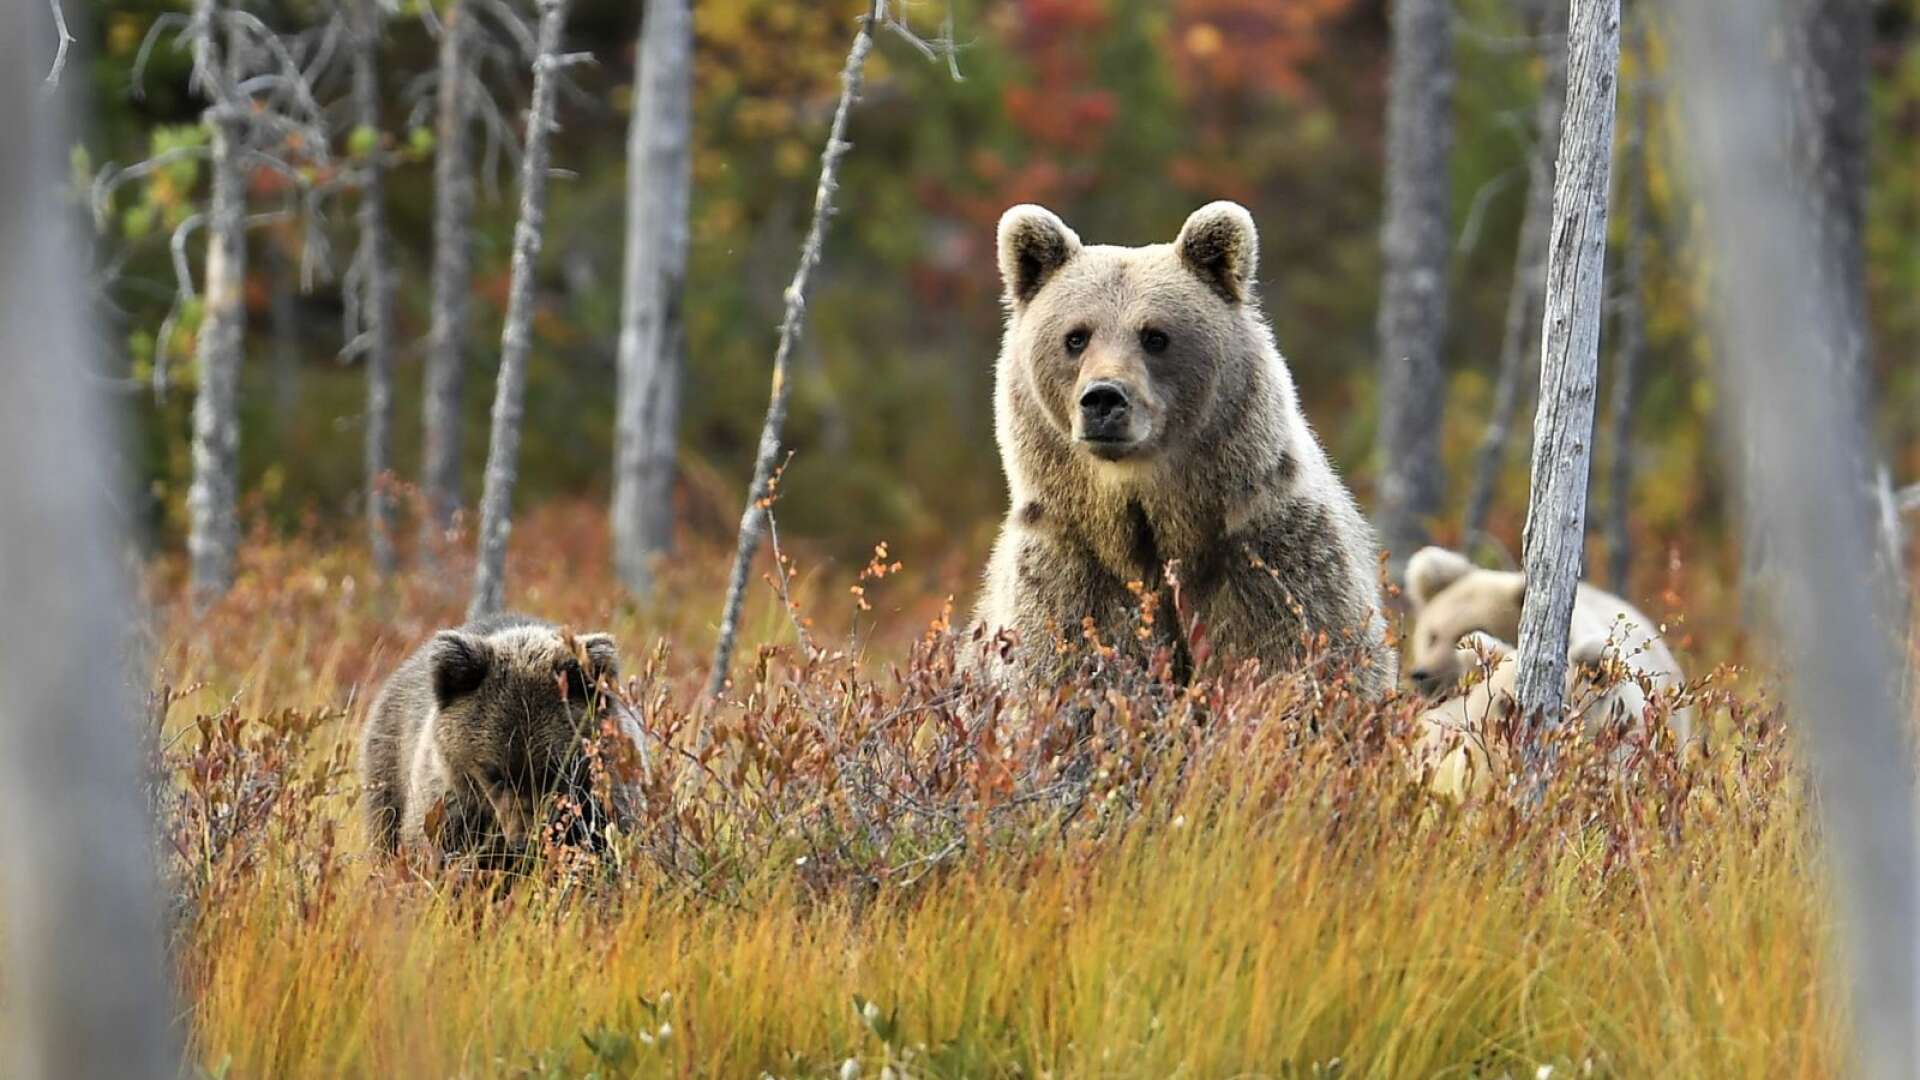 Totalt tre björnar, varav max en hona, får fällas i årets licensjakt på björn i Värmland. Länsstyrelsen rekommenderar dock att jägarna undviker att skjuta årsungar och björnhona som åtföljs av ungar, som på denna bild, är fredade. 